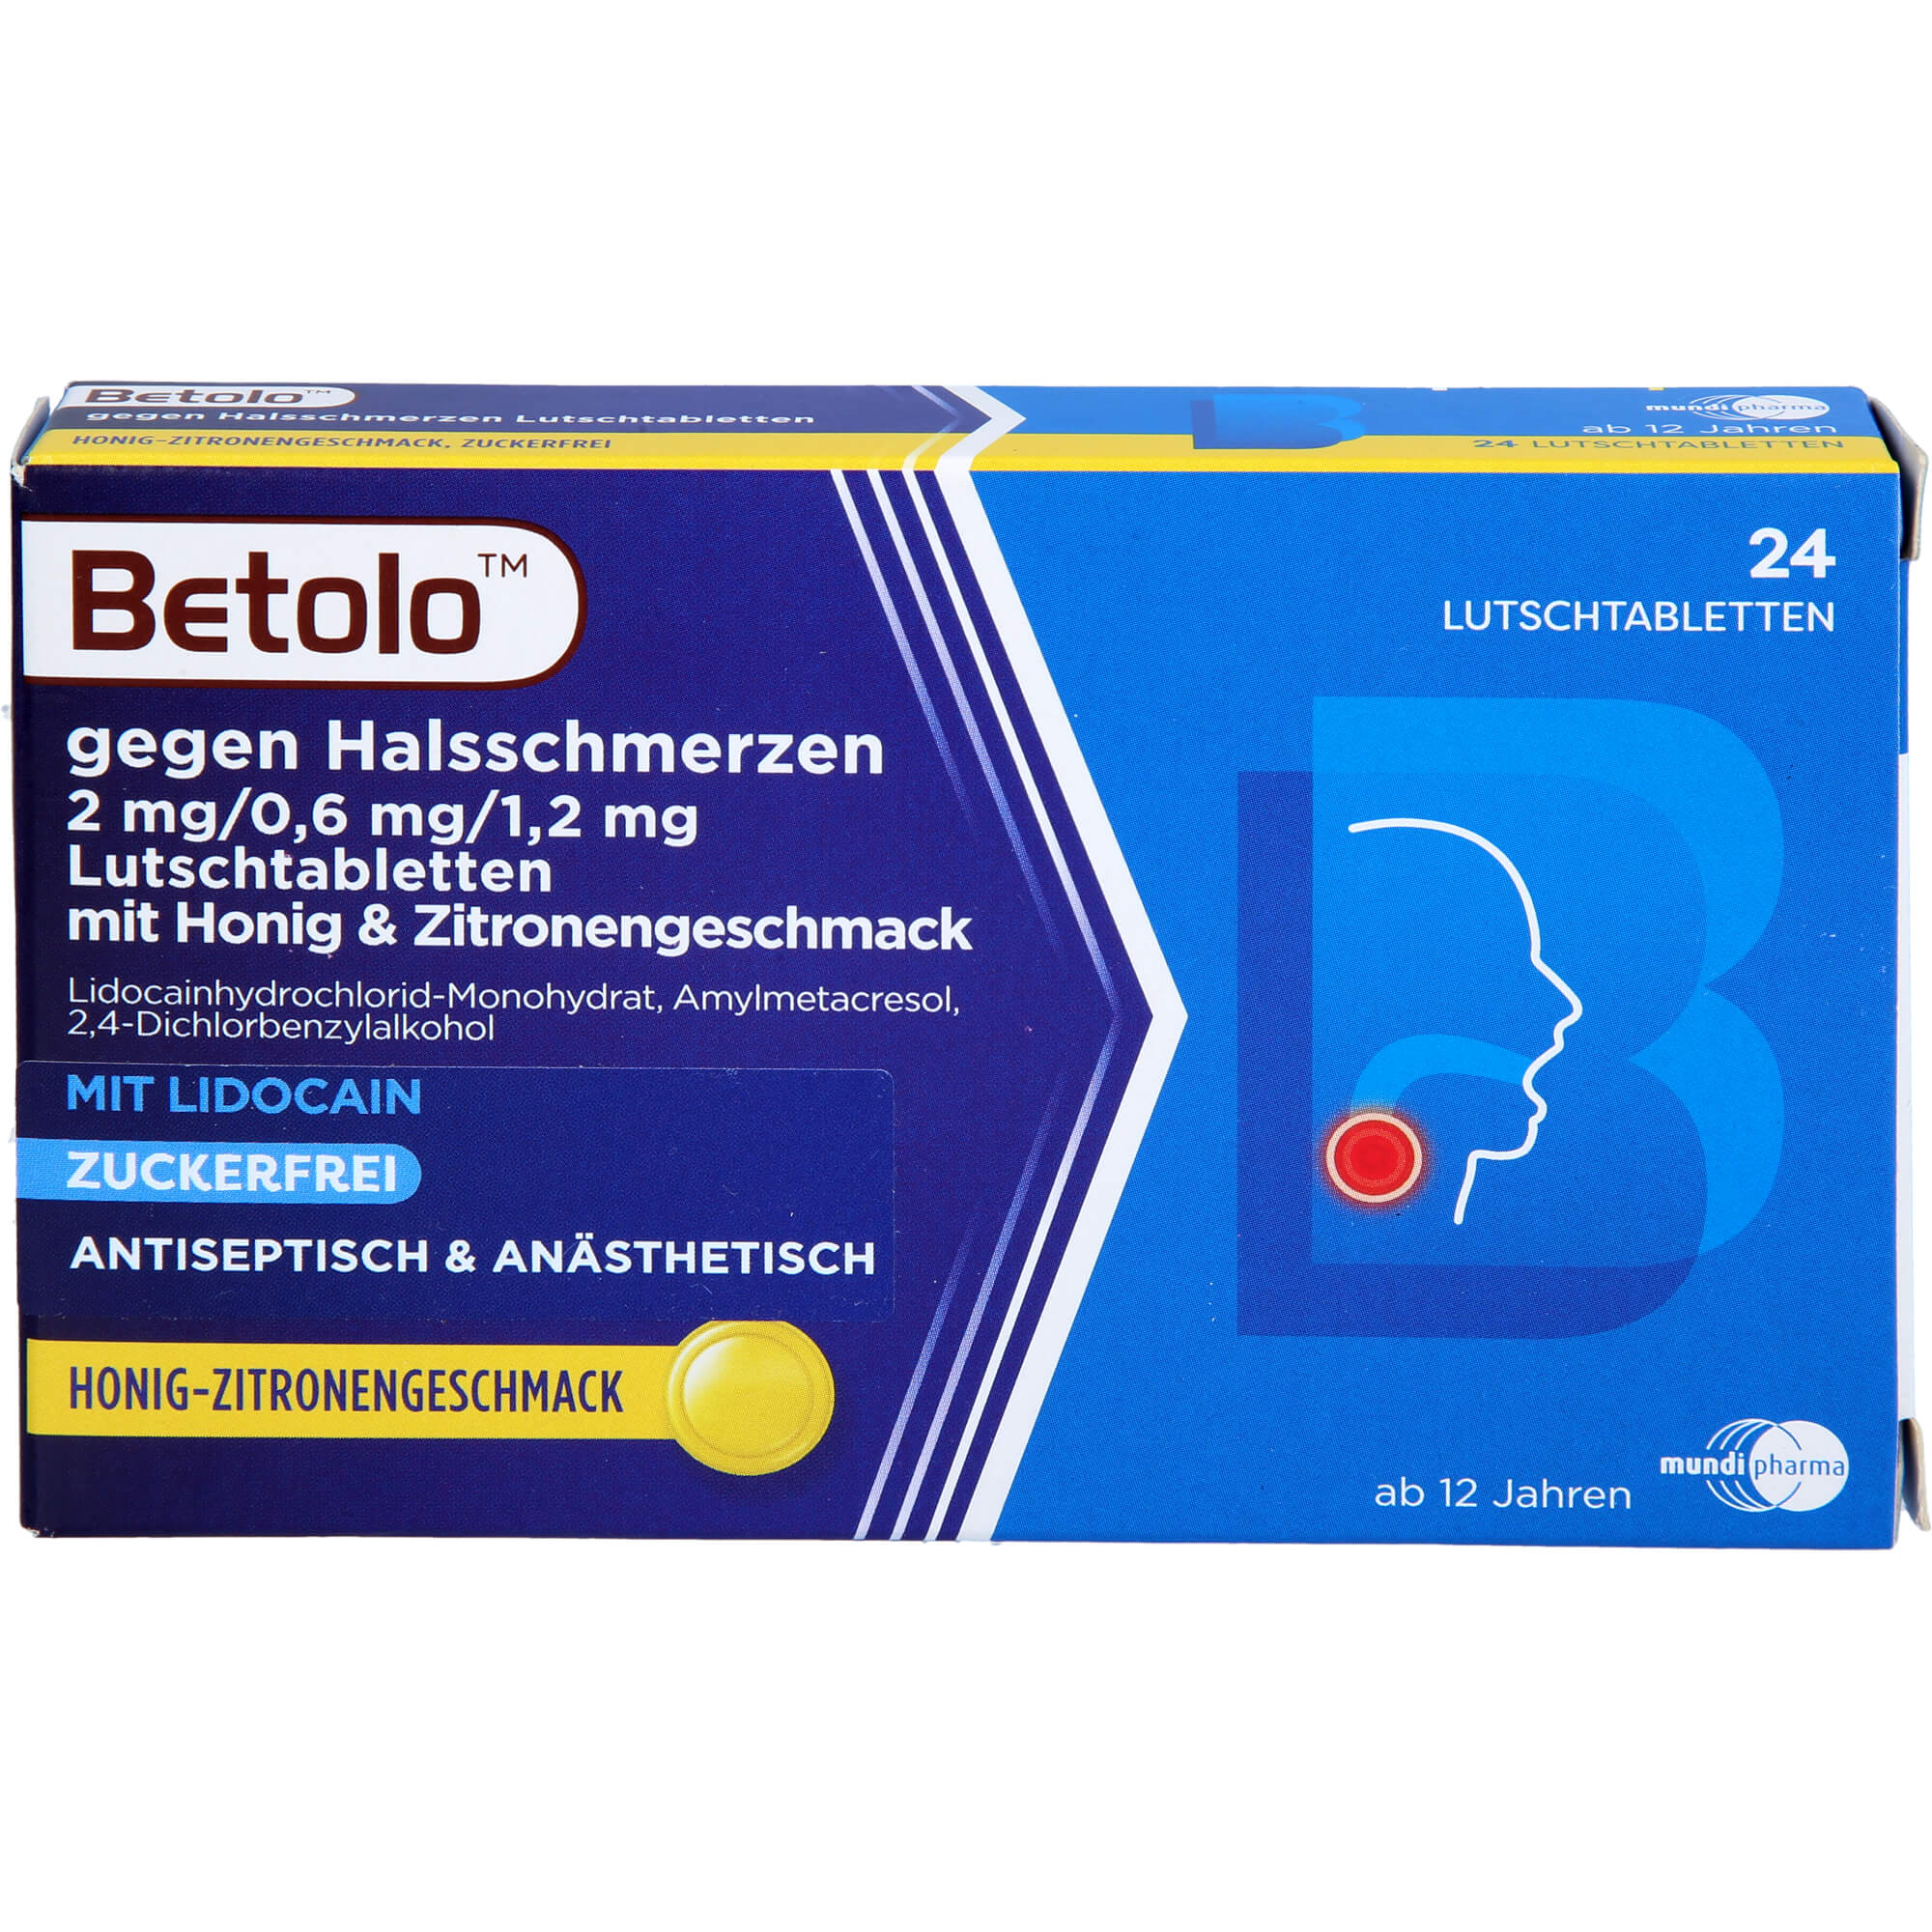 BETOLO gegen Halsschm.2/0.6/1,2 mg Lut.-Tab.Hon-Zi